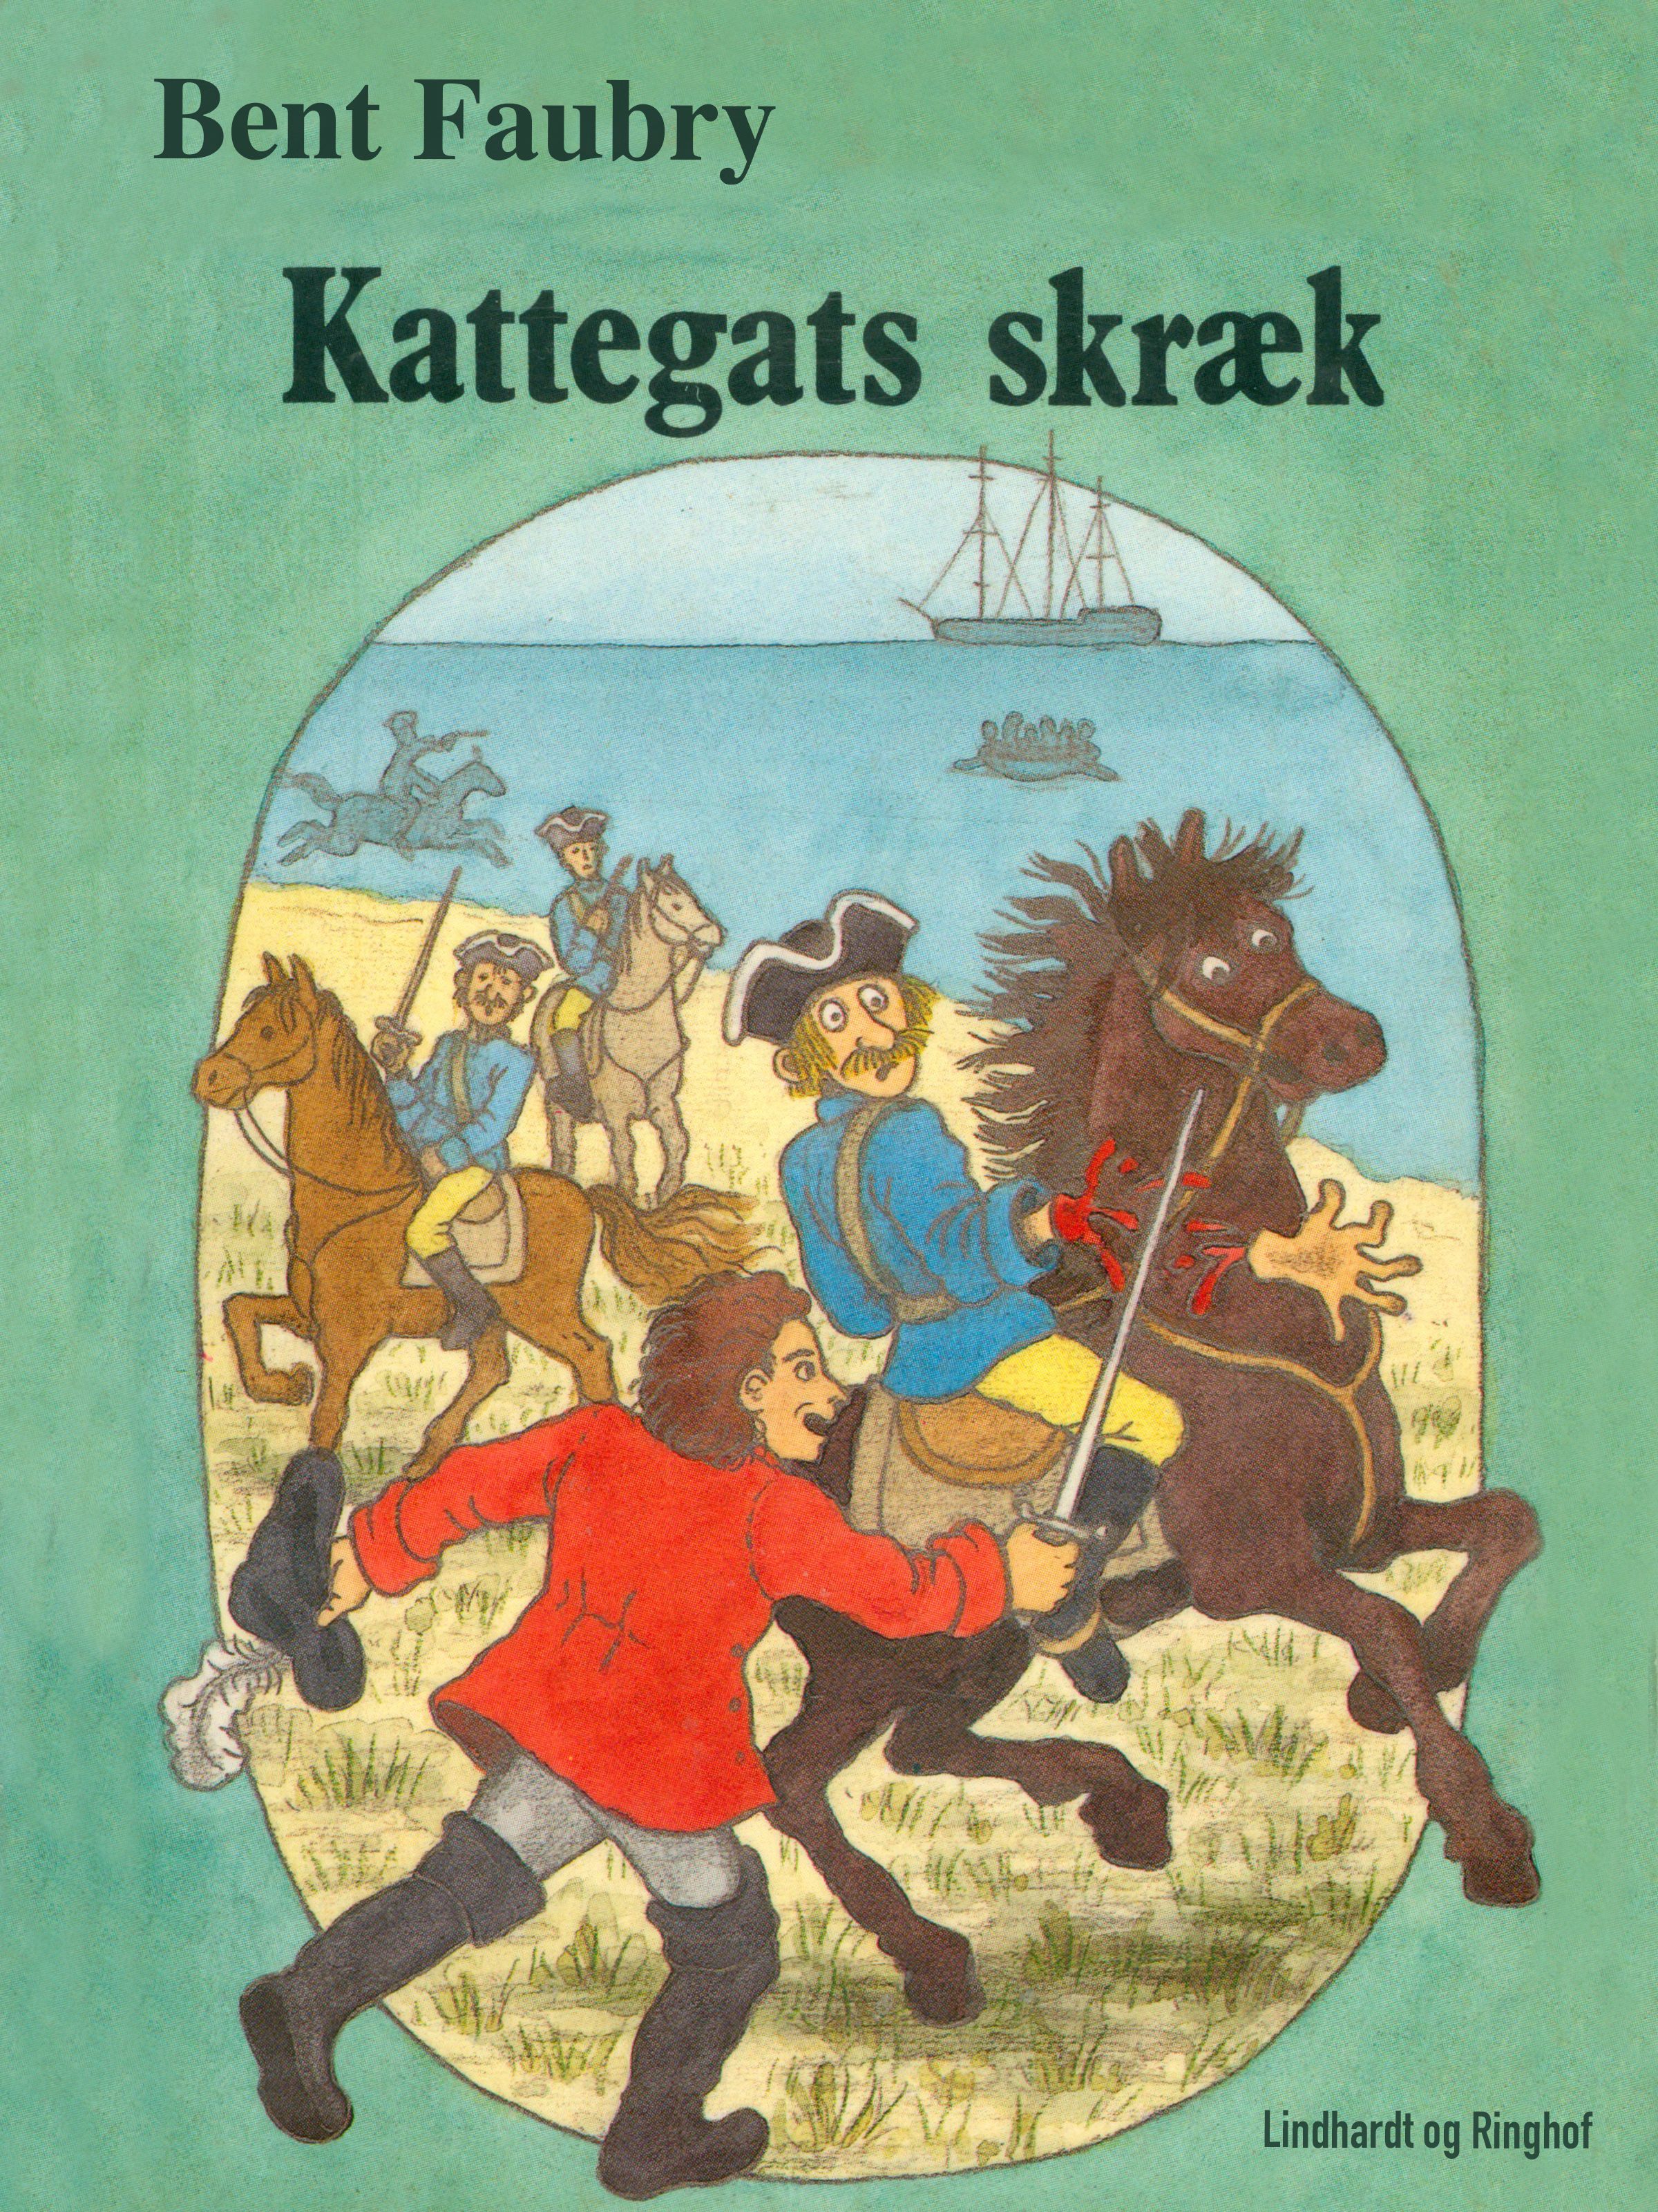 Kattegats skræk, eBook by Bent Faurby